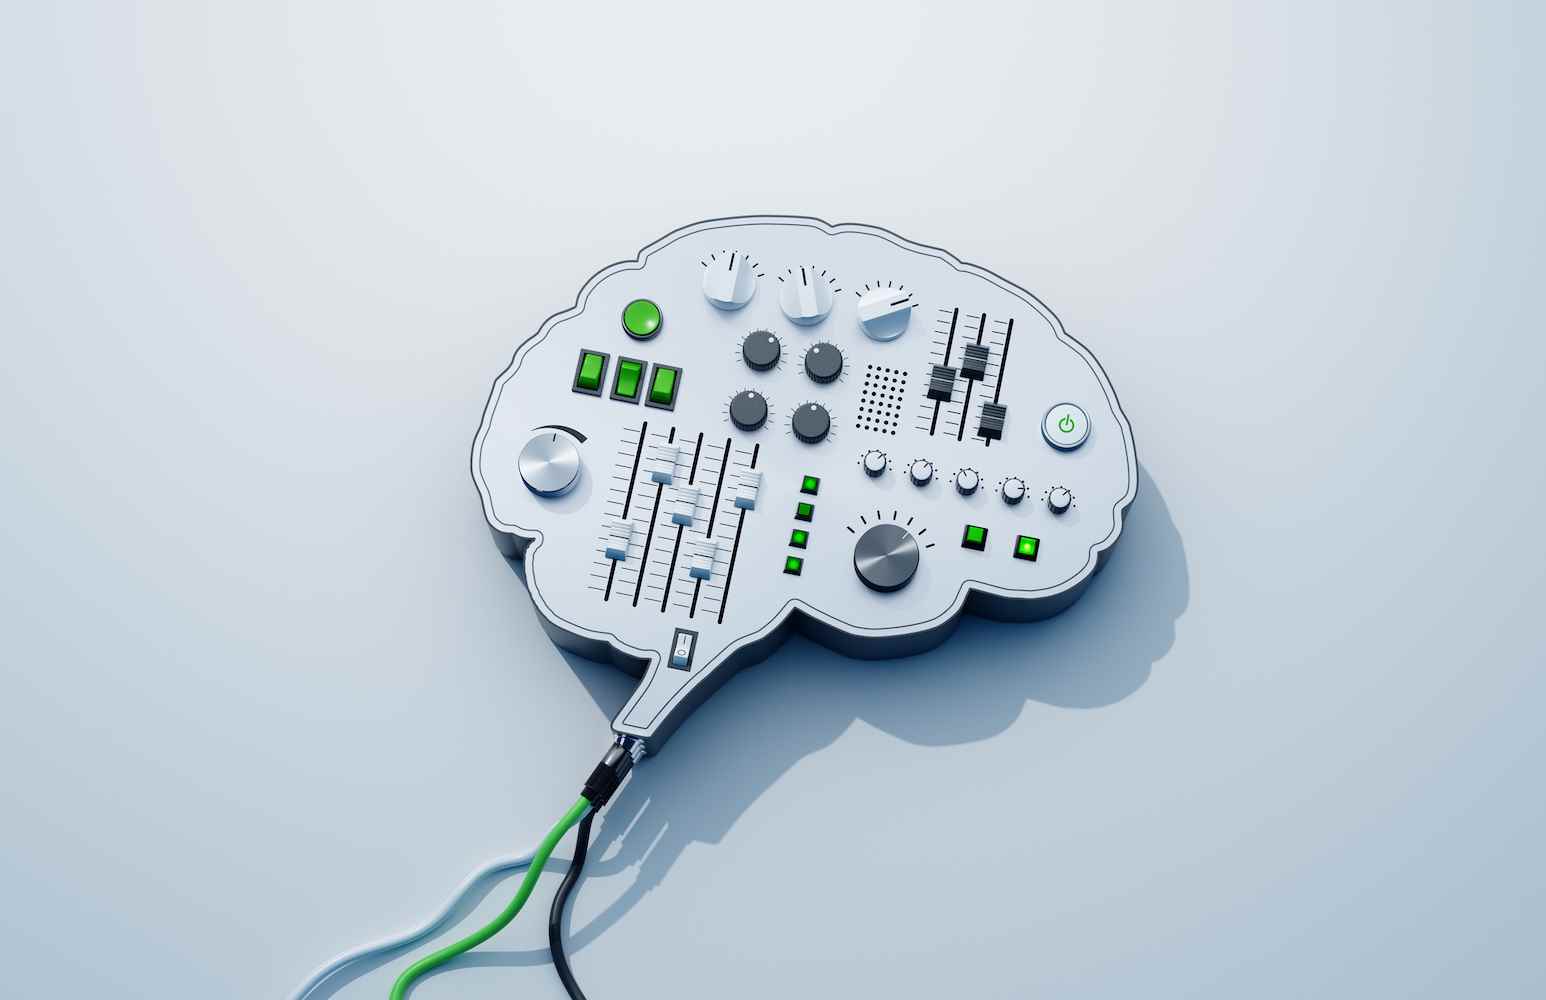 düğmeleri ve düğmeleri olan beyin şeklindeki bir konsolun dijital olarak oluşturulmuş görüntüsü